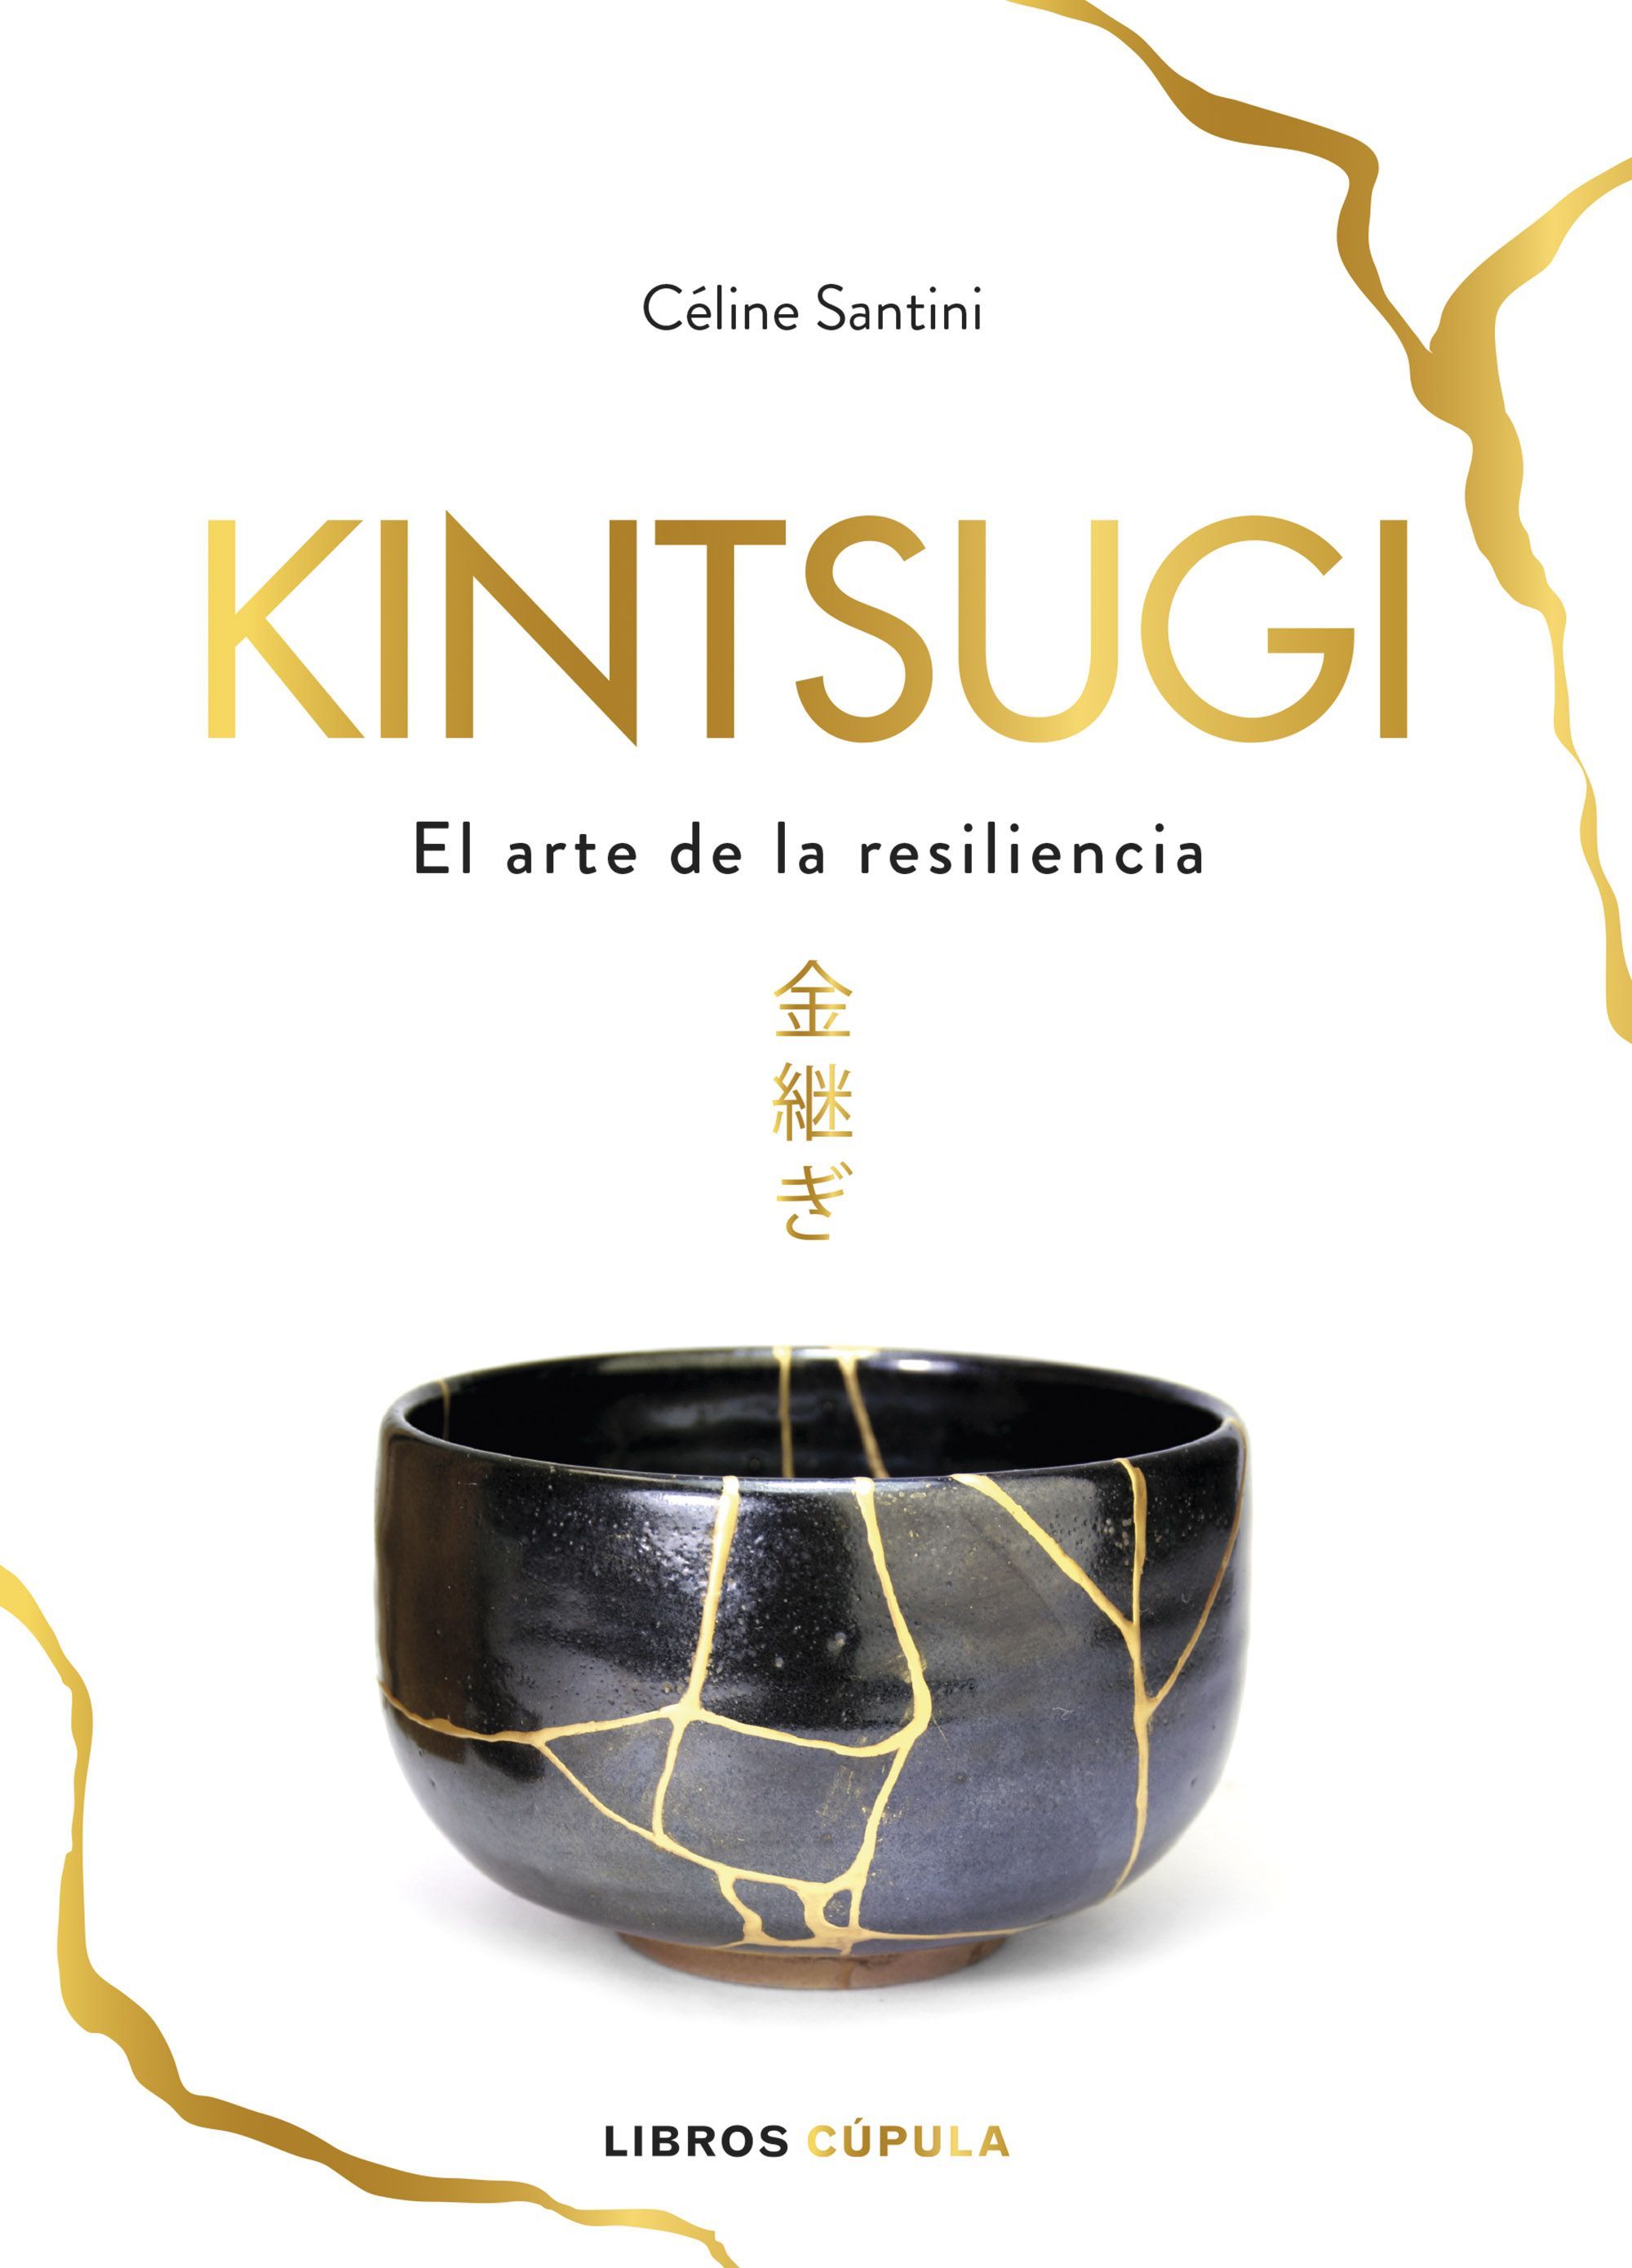 Kintsugi arte japonés transformado en filosofia de vida (Ed. Cúpula)